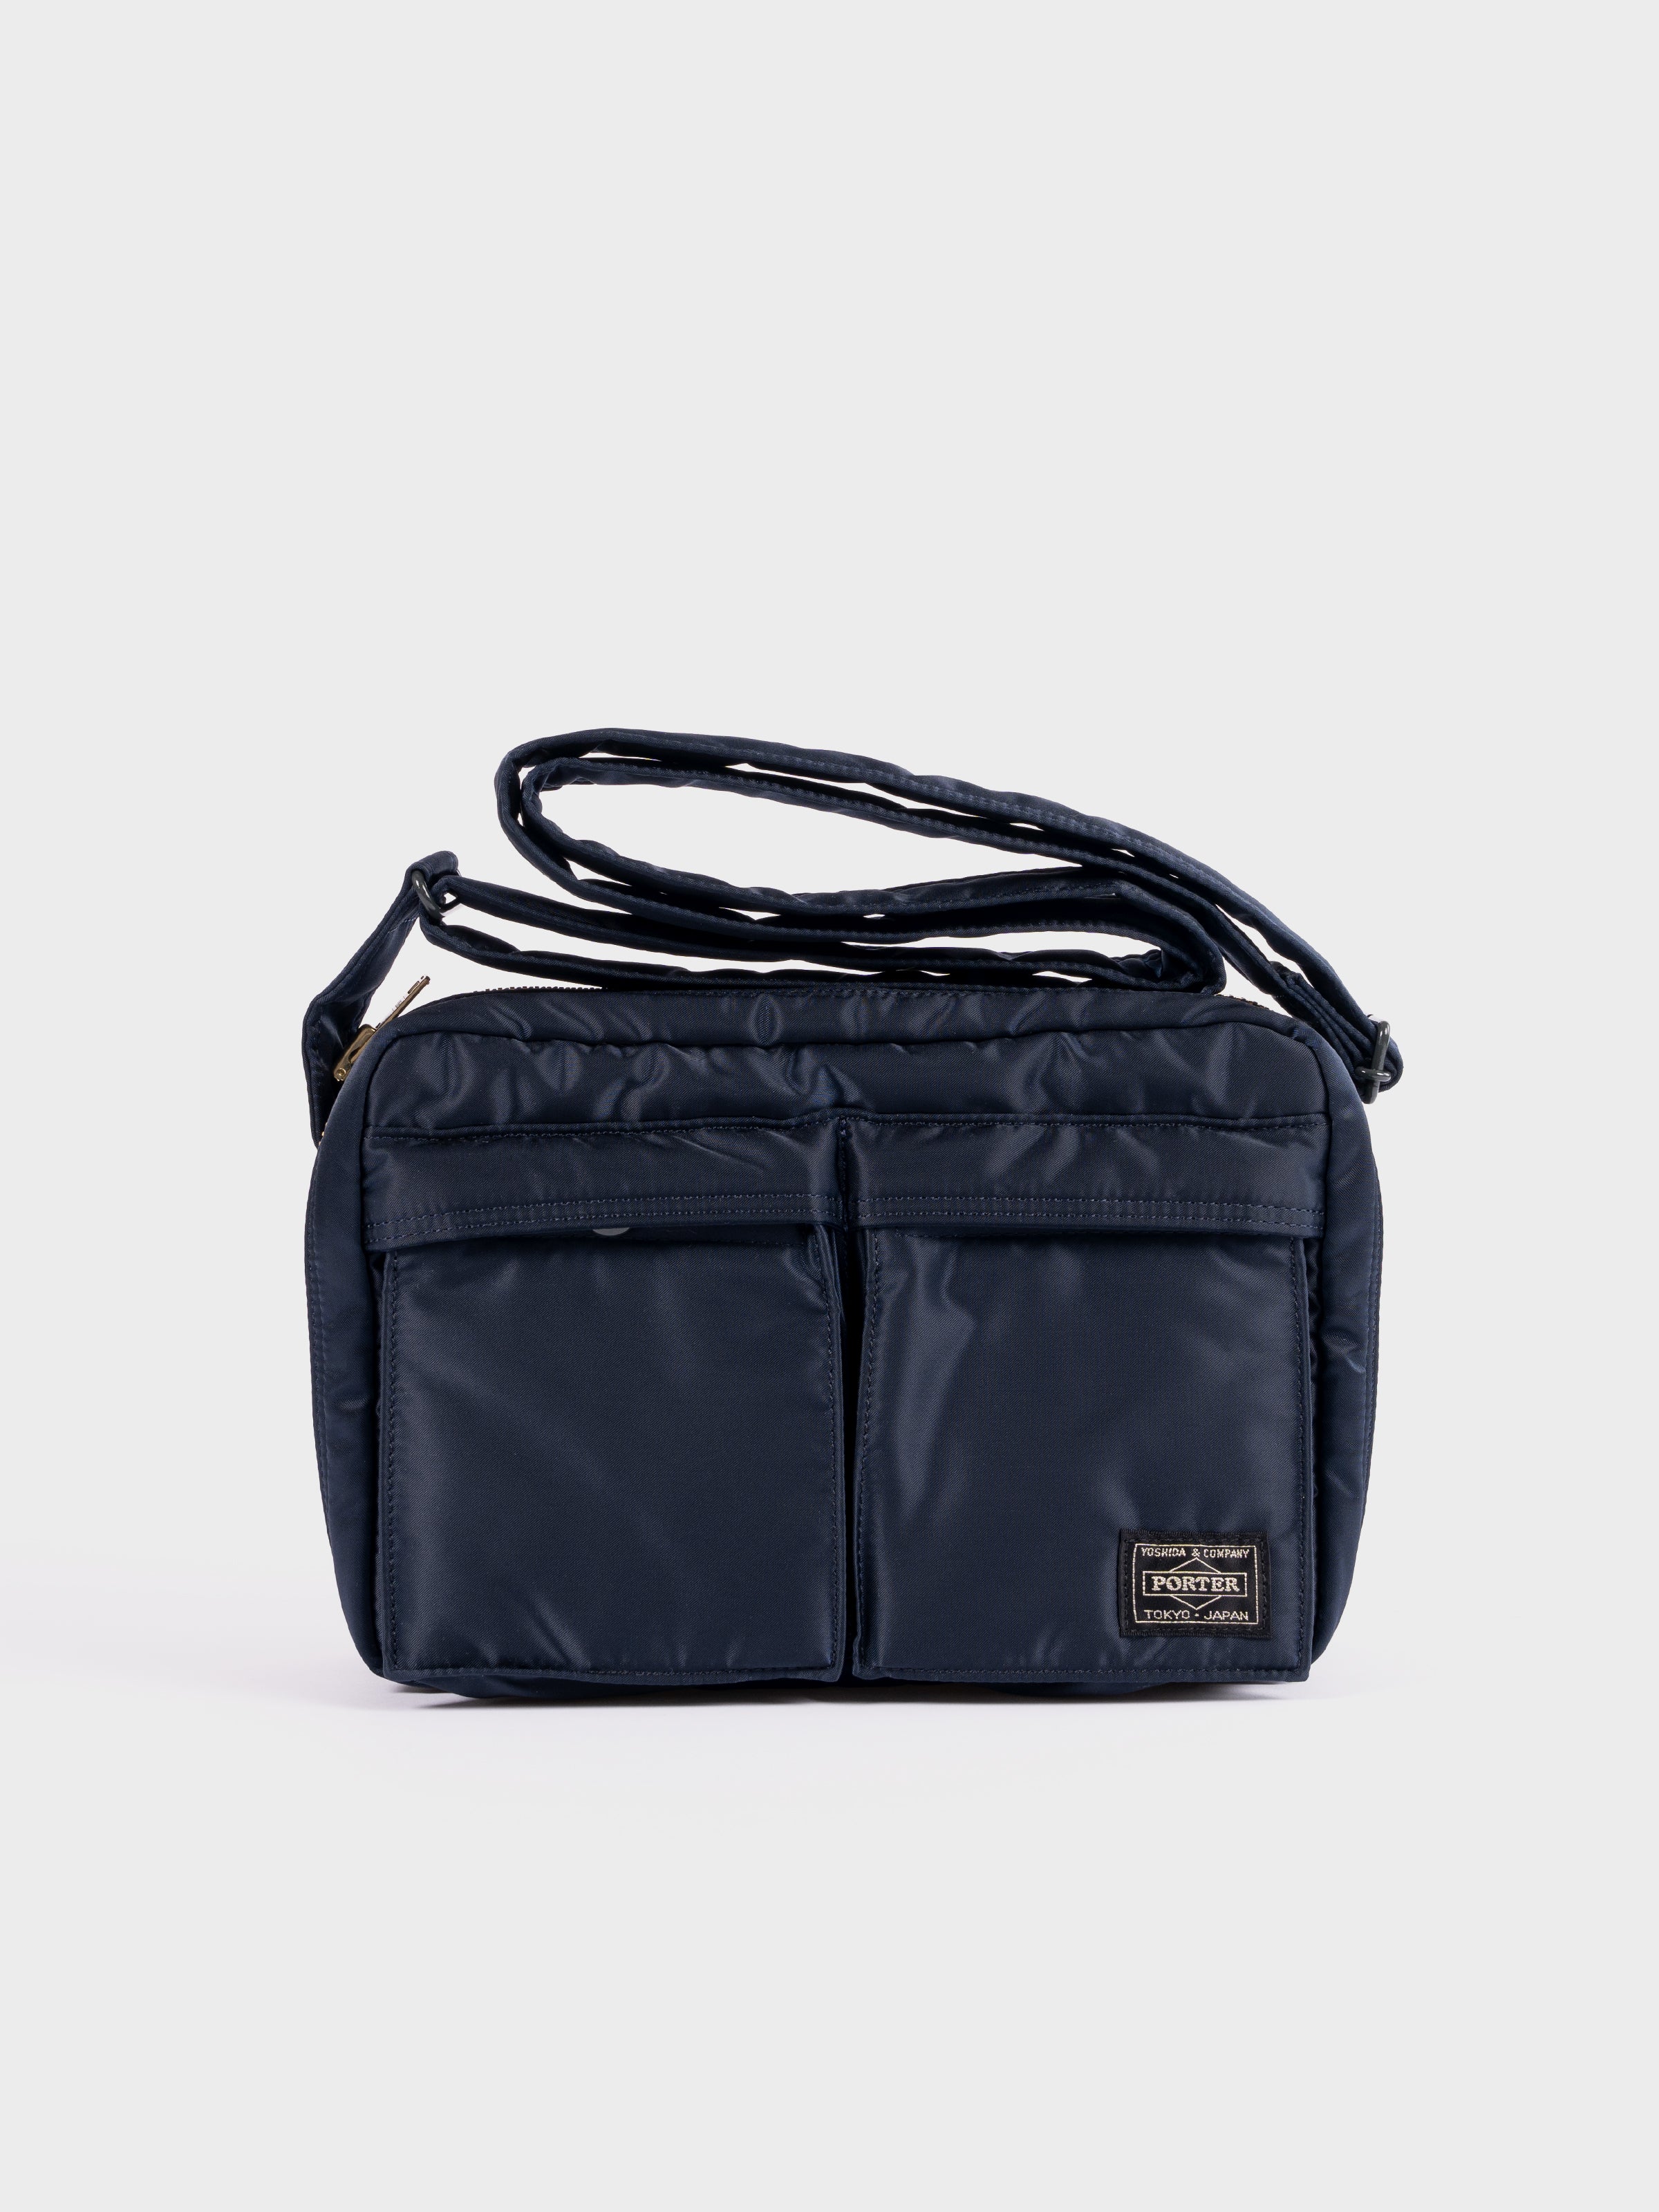 Porter-Yoshida & Co Tanker Shoulder Bag S - Iron Blue – SevenStones